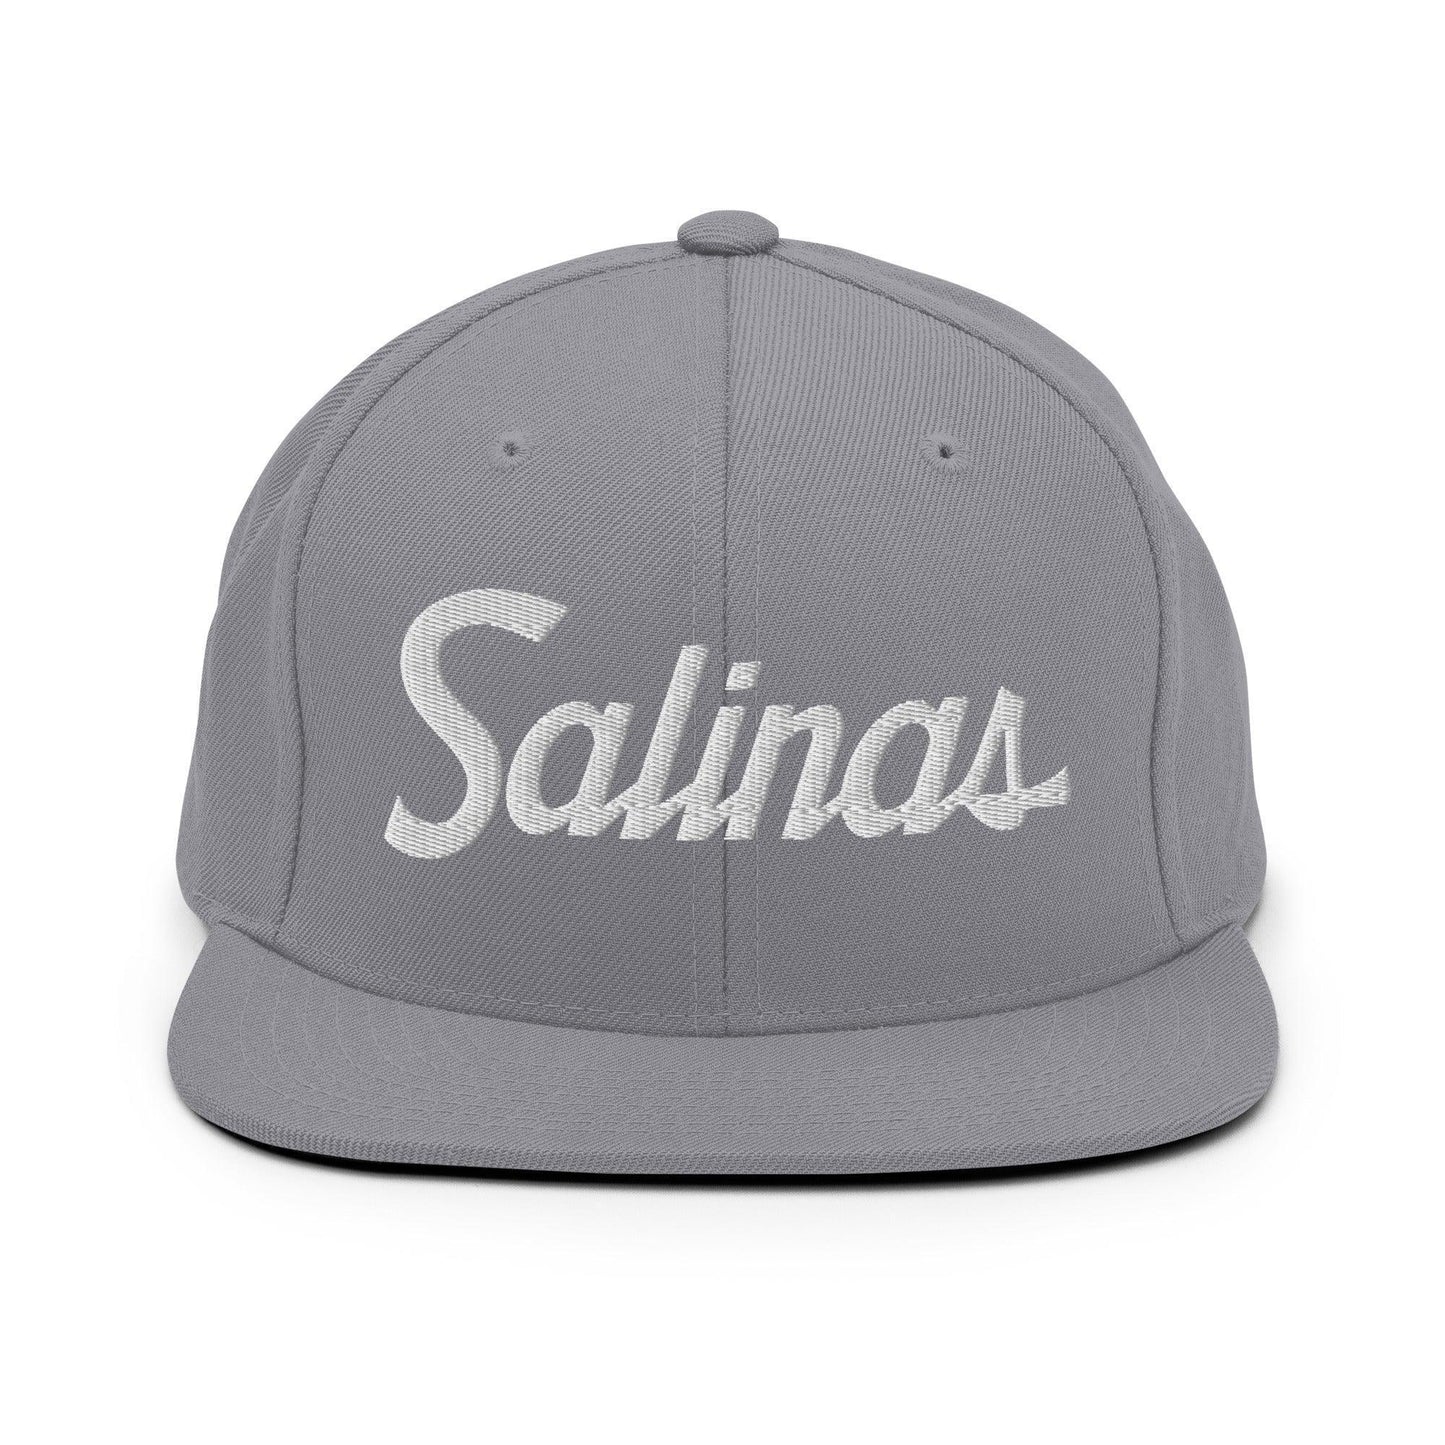 Salinas Script Snapback Hat Silver